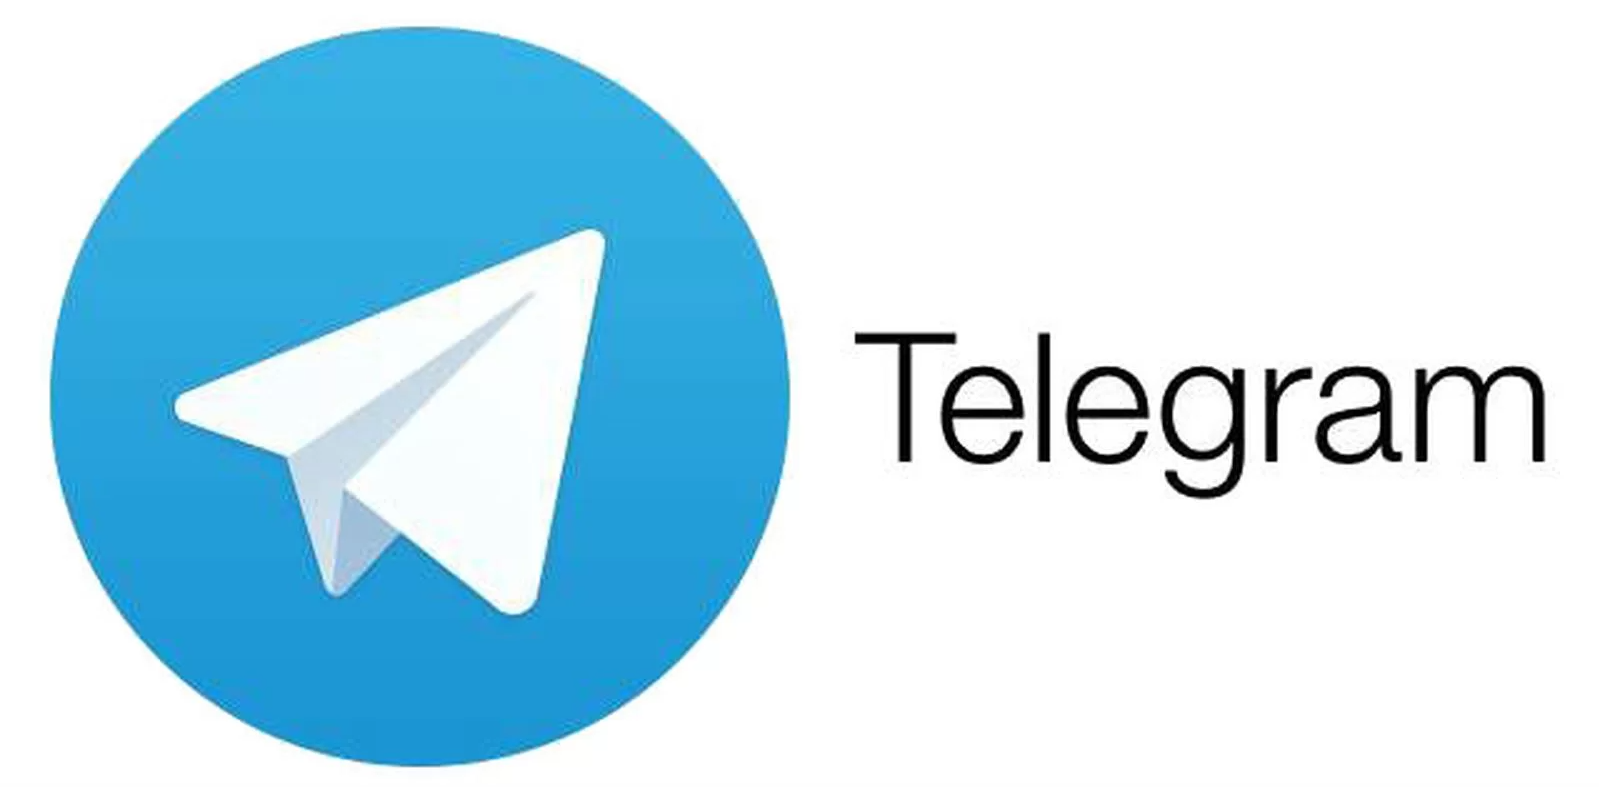 telegram apk download 2022